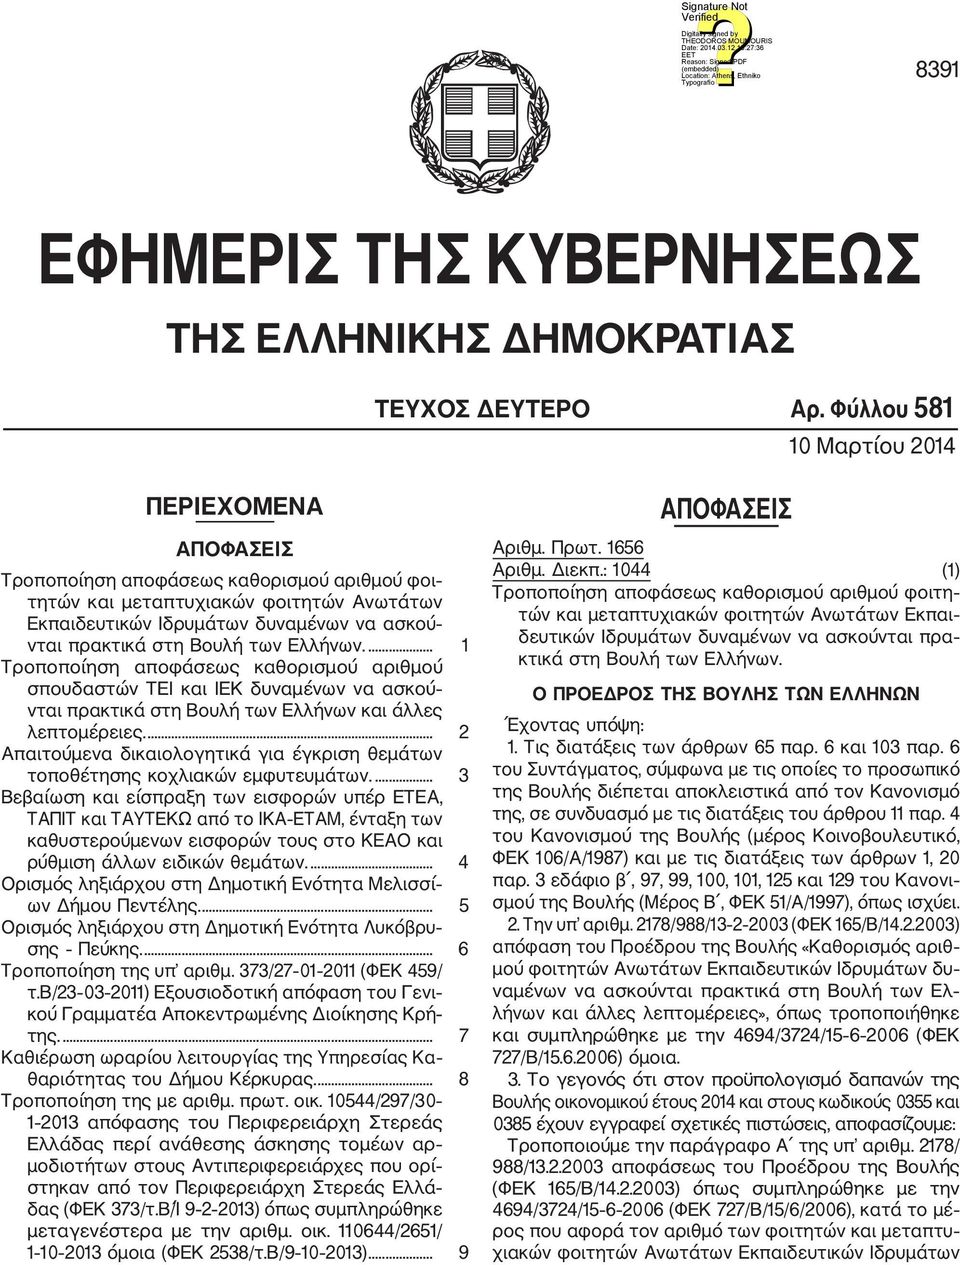 Βουλή των Ελλήνων.... 1 Τροποποίηση αποφάσεως καθορισμού αριθμού σπουδαστών ΤΕΙ και ΙΕΚ δυναμένων να ασκού νται πρακτικά στη Βουλή των Ελλήνων και άλλες λεπτομέρειες.